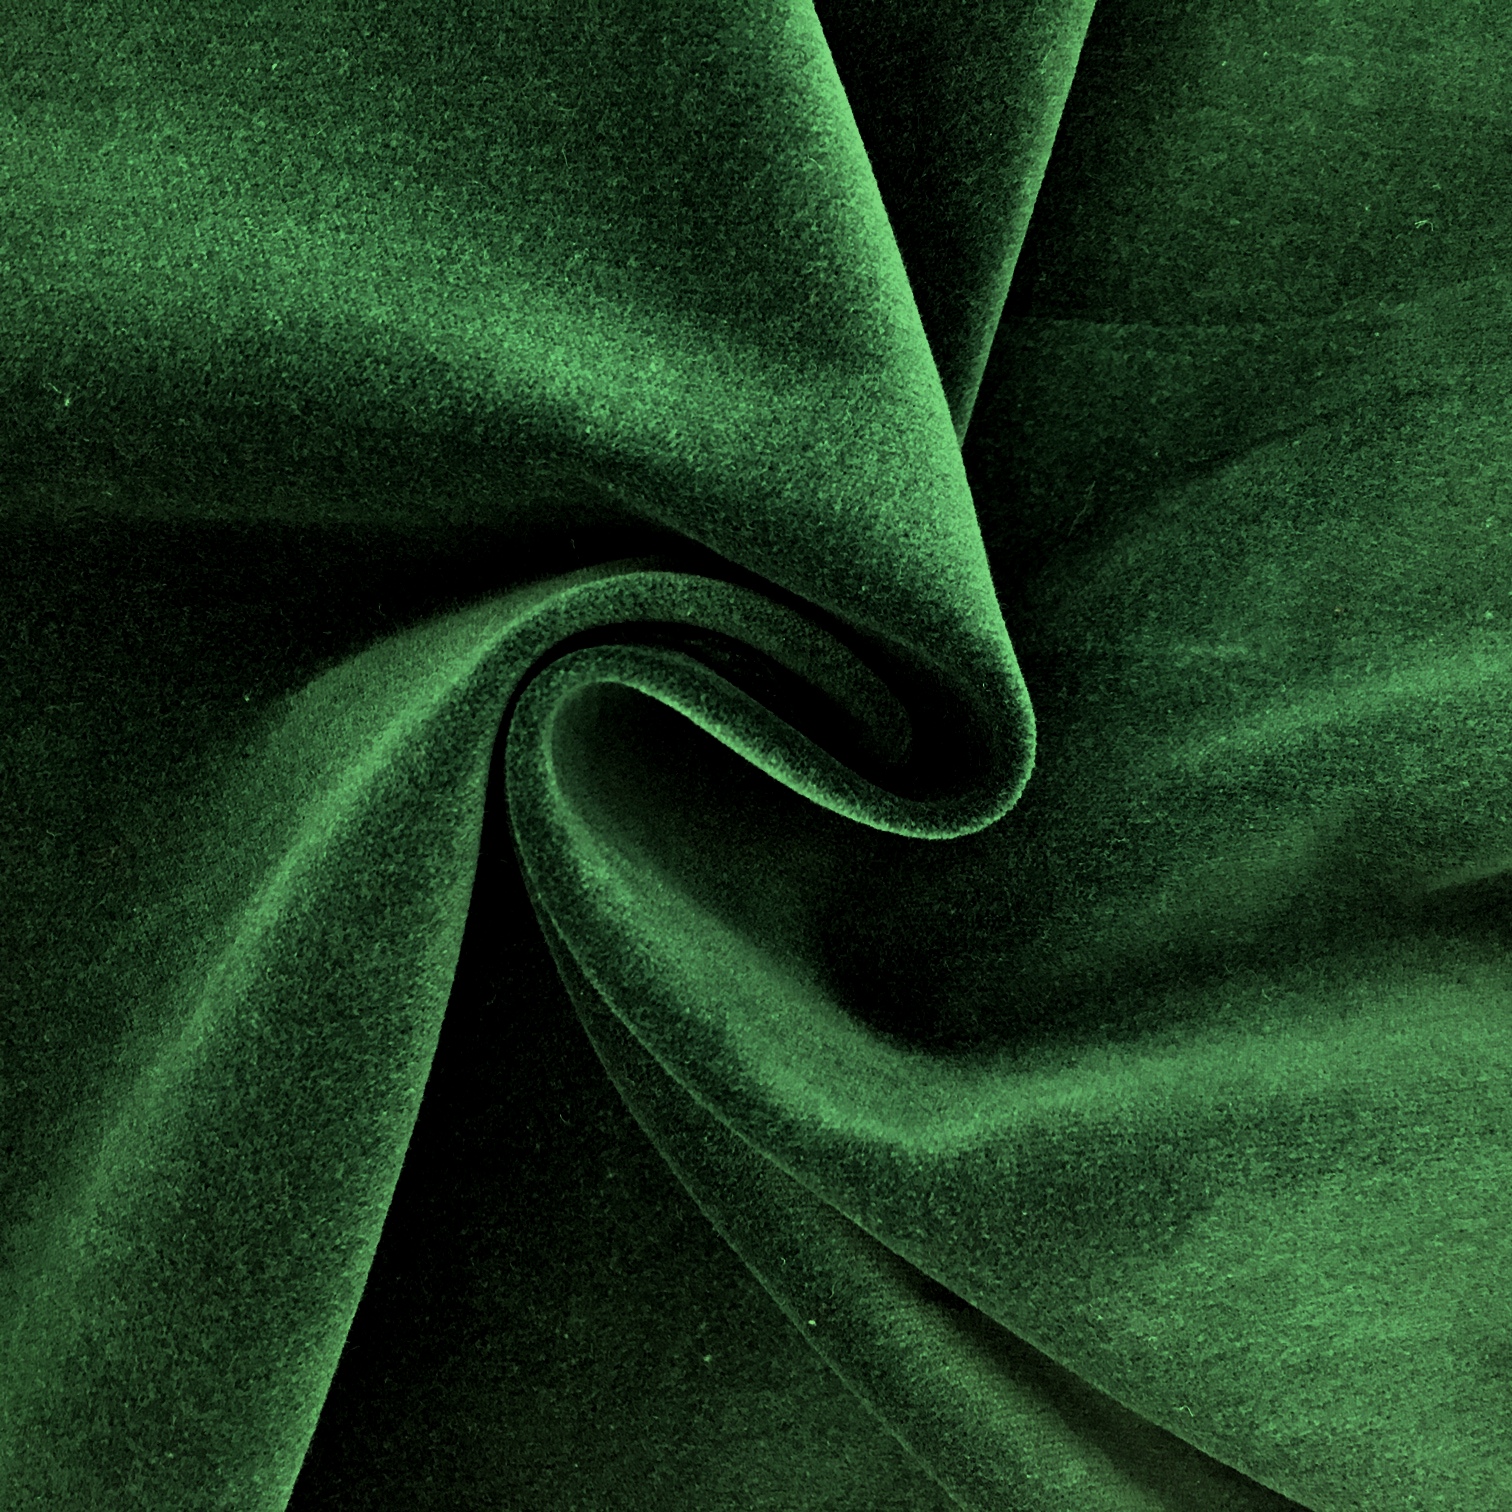 https://www.online-fabrics.co.uk/user/products/large/green%20cotton%20velvet%2015001.JPG